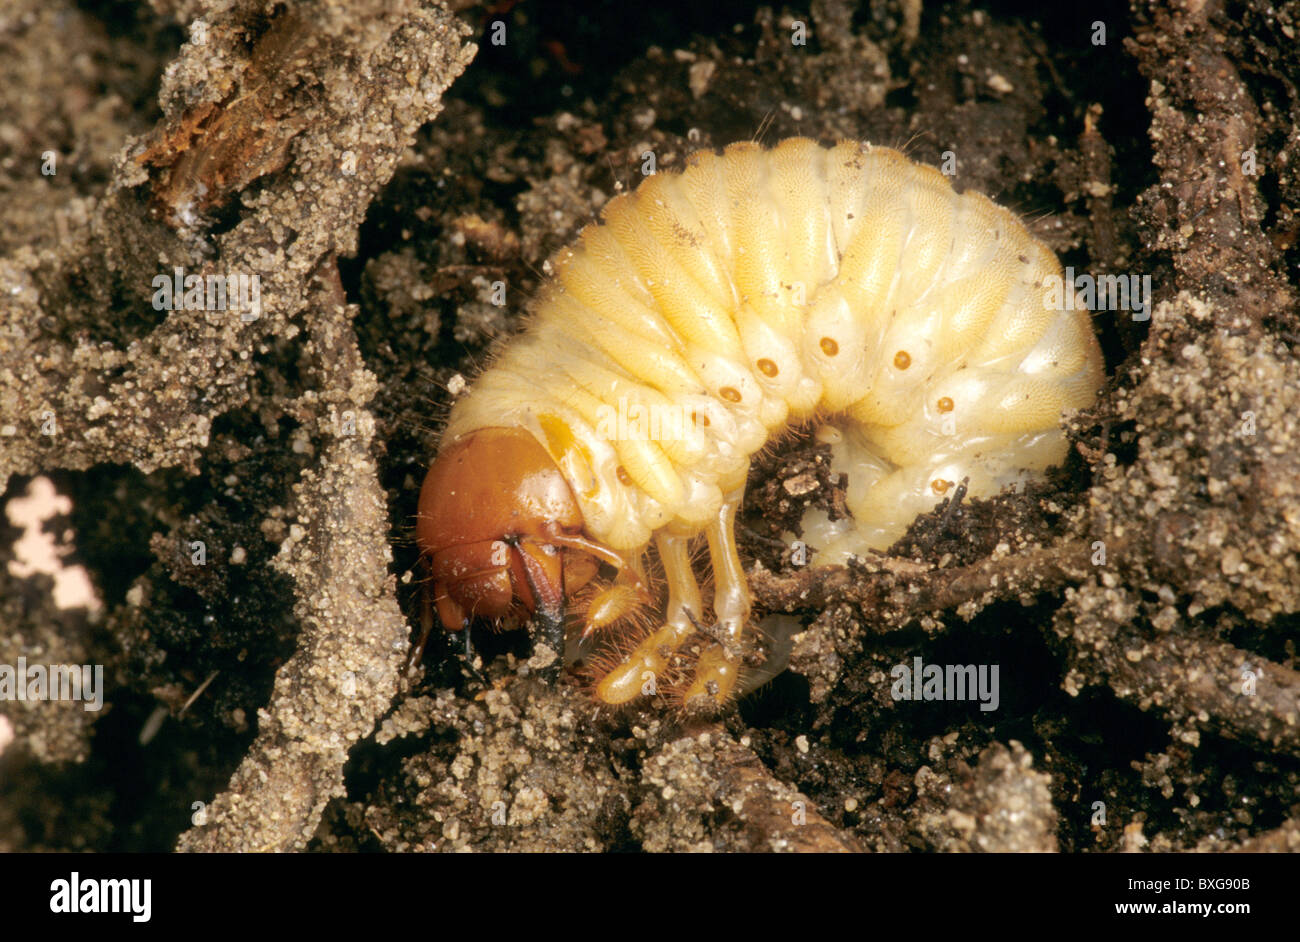 Junio la larva del escarabajo, Foto de stock